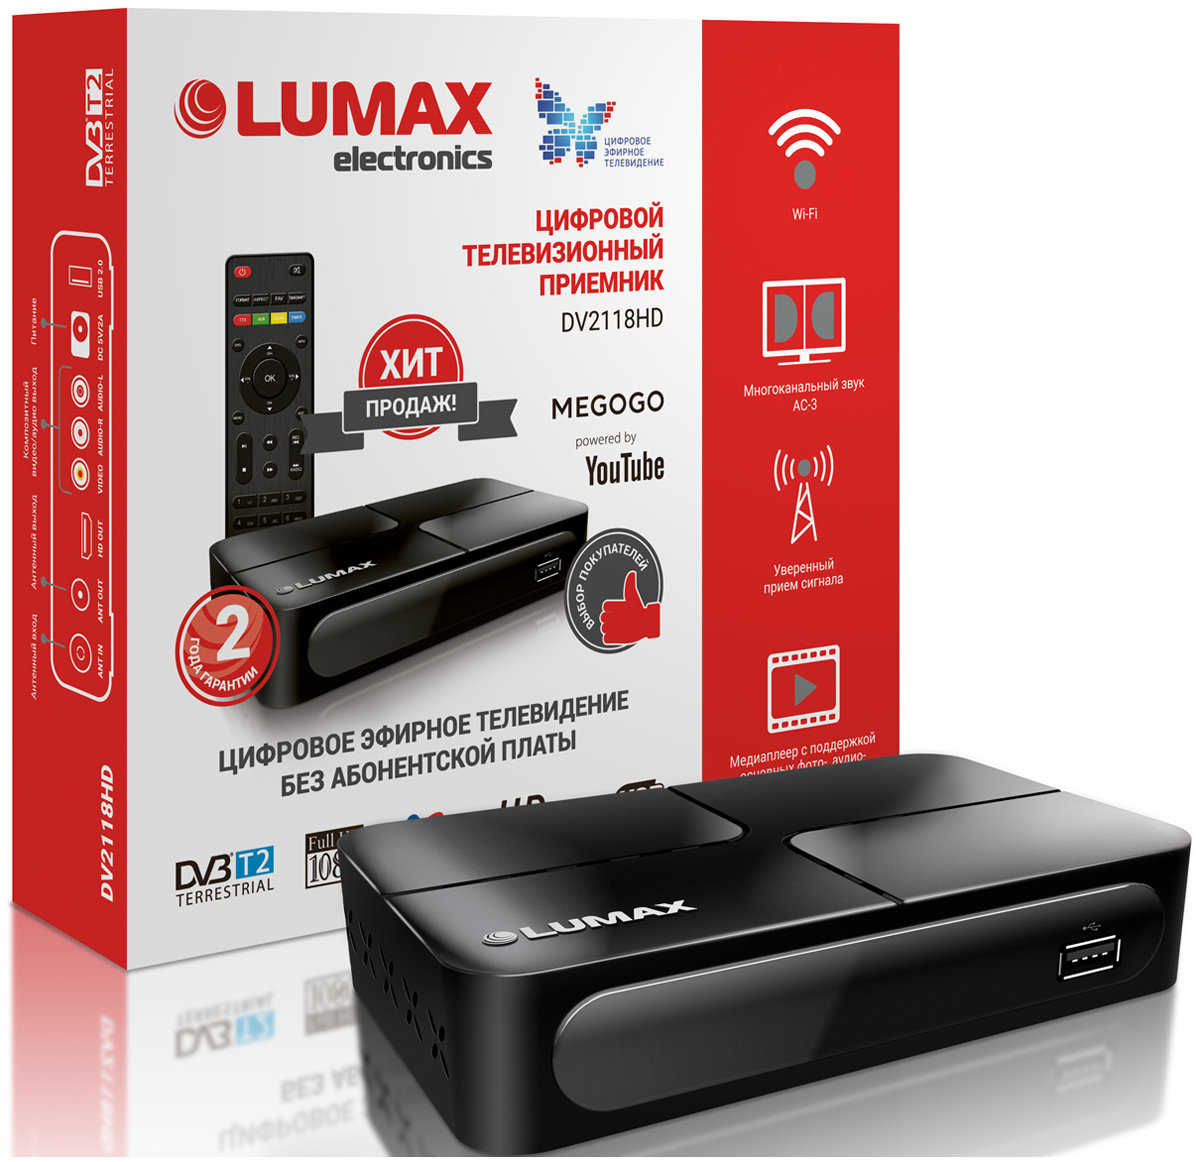 цифровой телевизионный приемник lumax dv3218hd Цифровой телевизионный ресивер Lumax DV 2118 HD